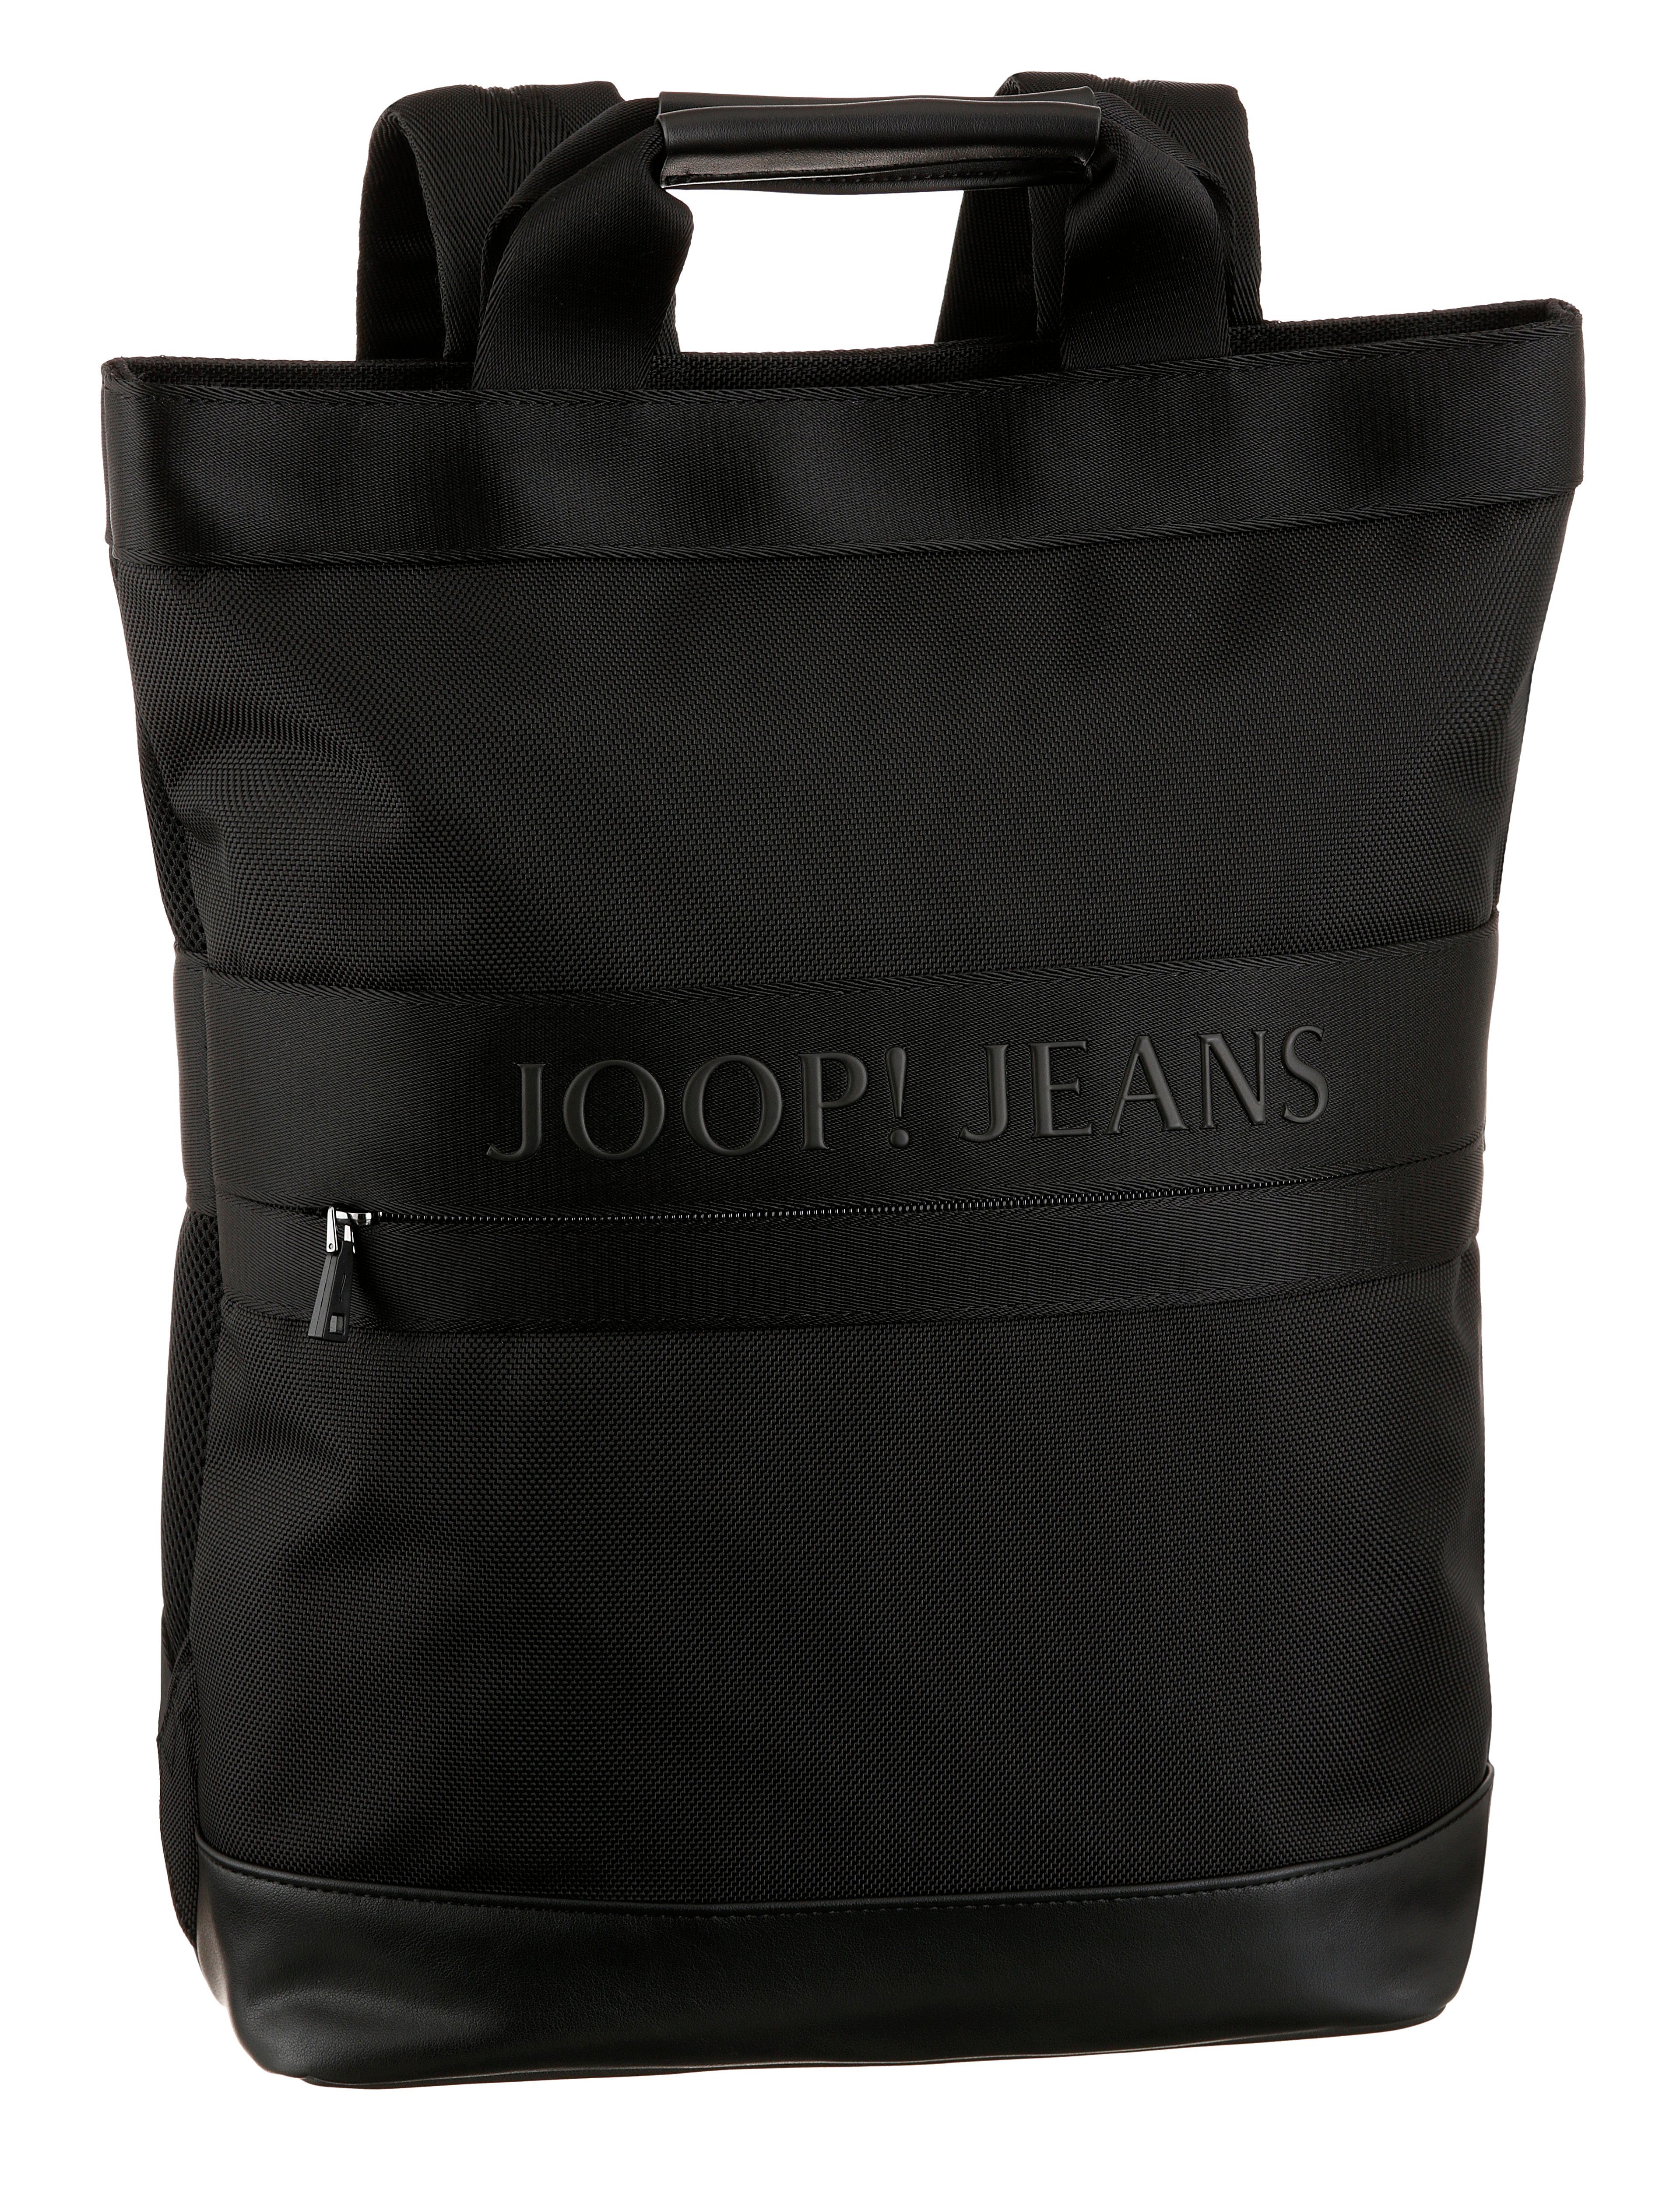 svz, black Cityrucksack Jeans modica Joop backpack mit falk Reißverschluss-Vortasche